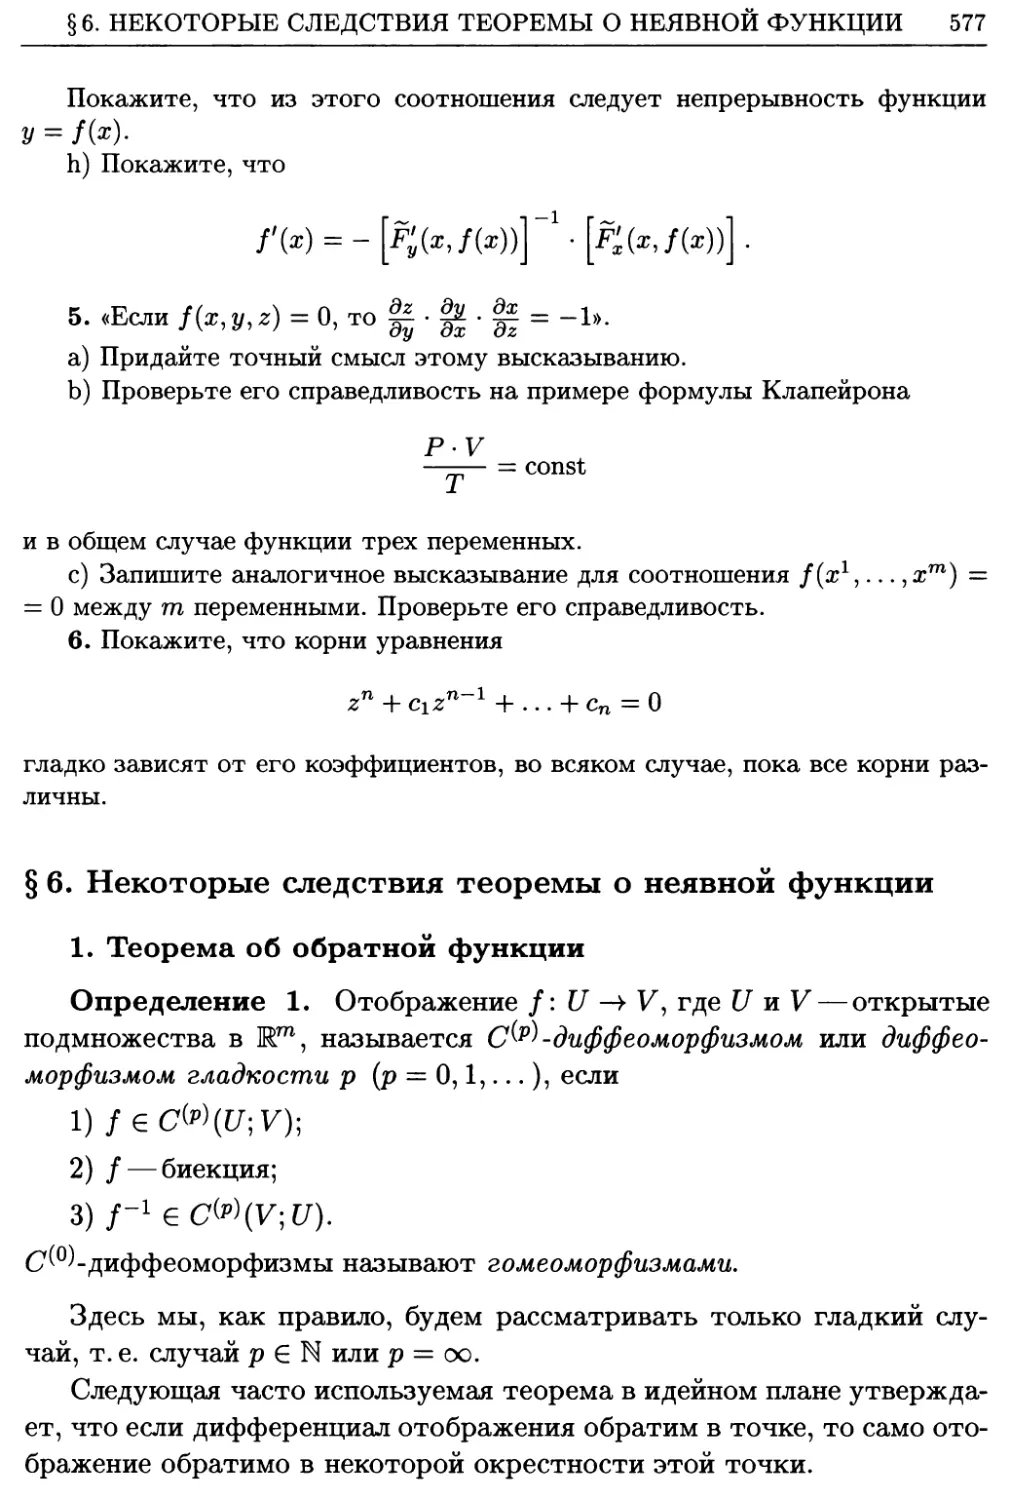 §6. Некоторые следствия теоремы о неявной функции